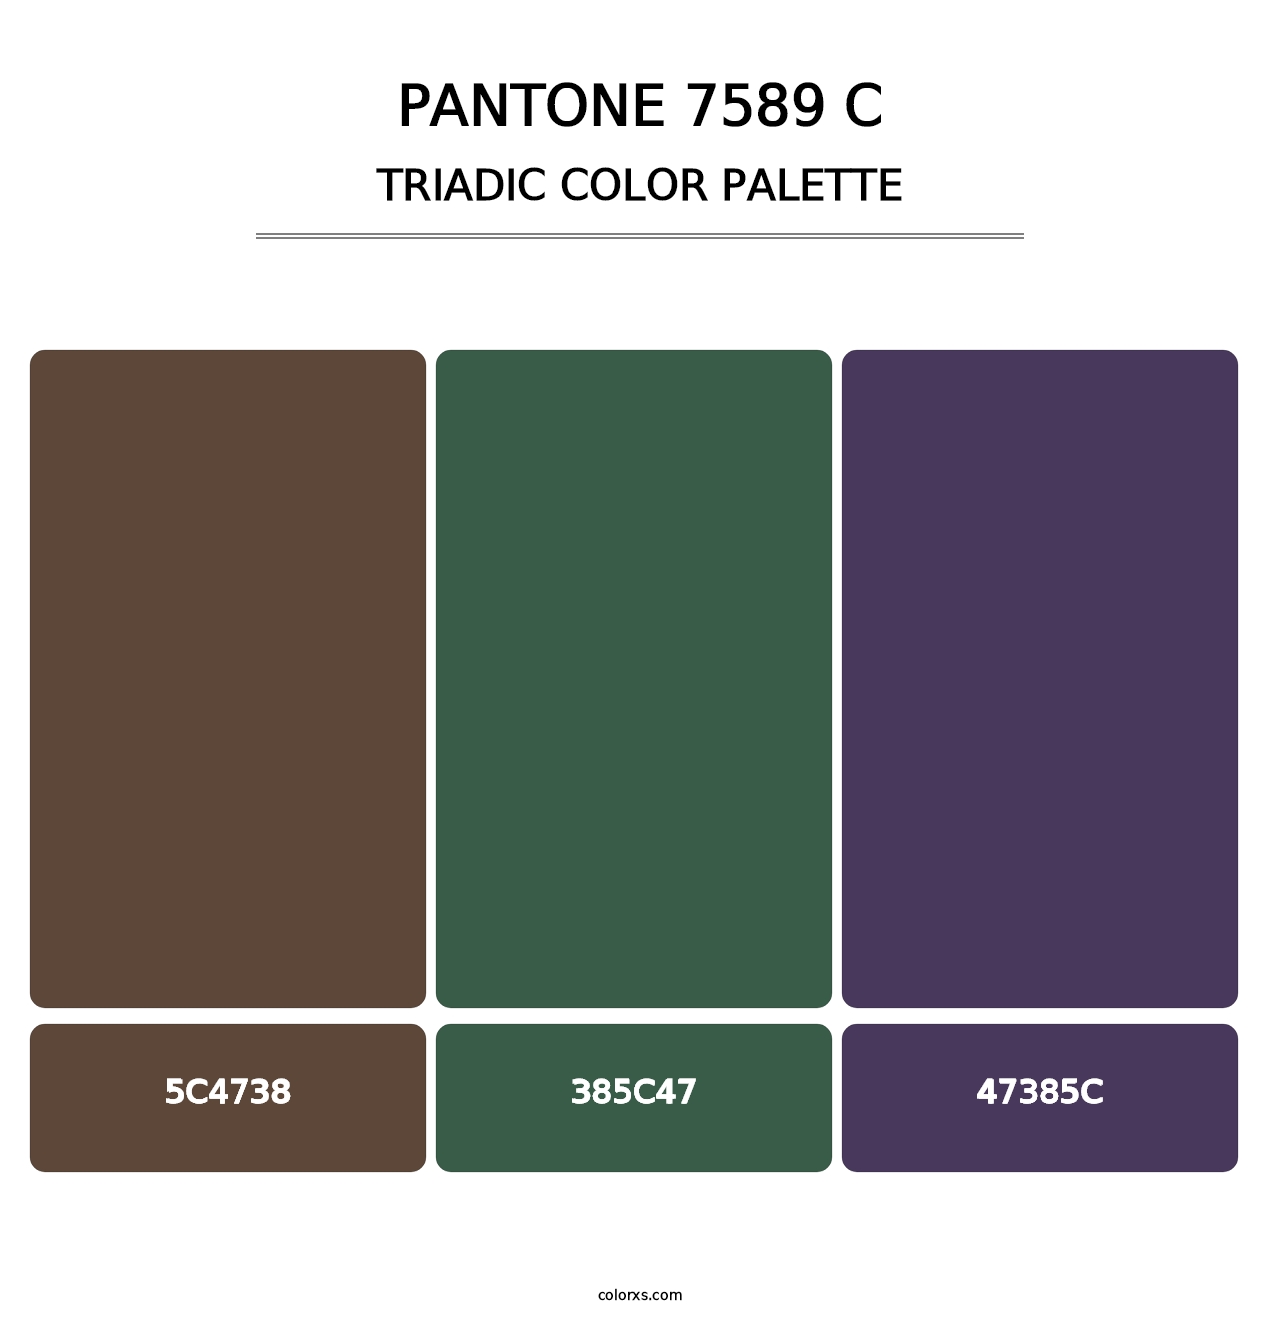 PANTONE 7589 C - Triadic Color Palette